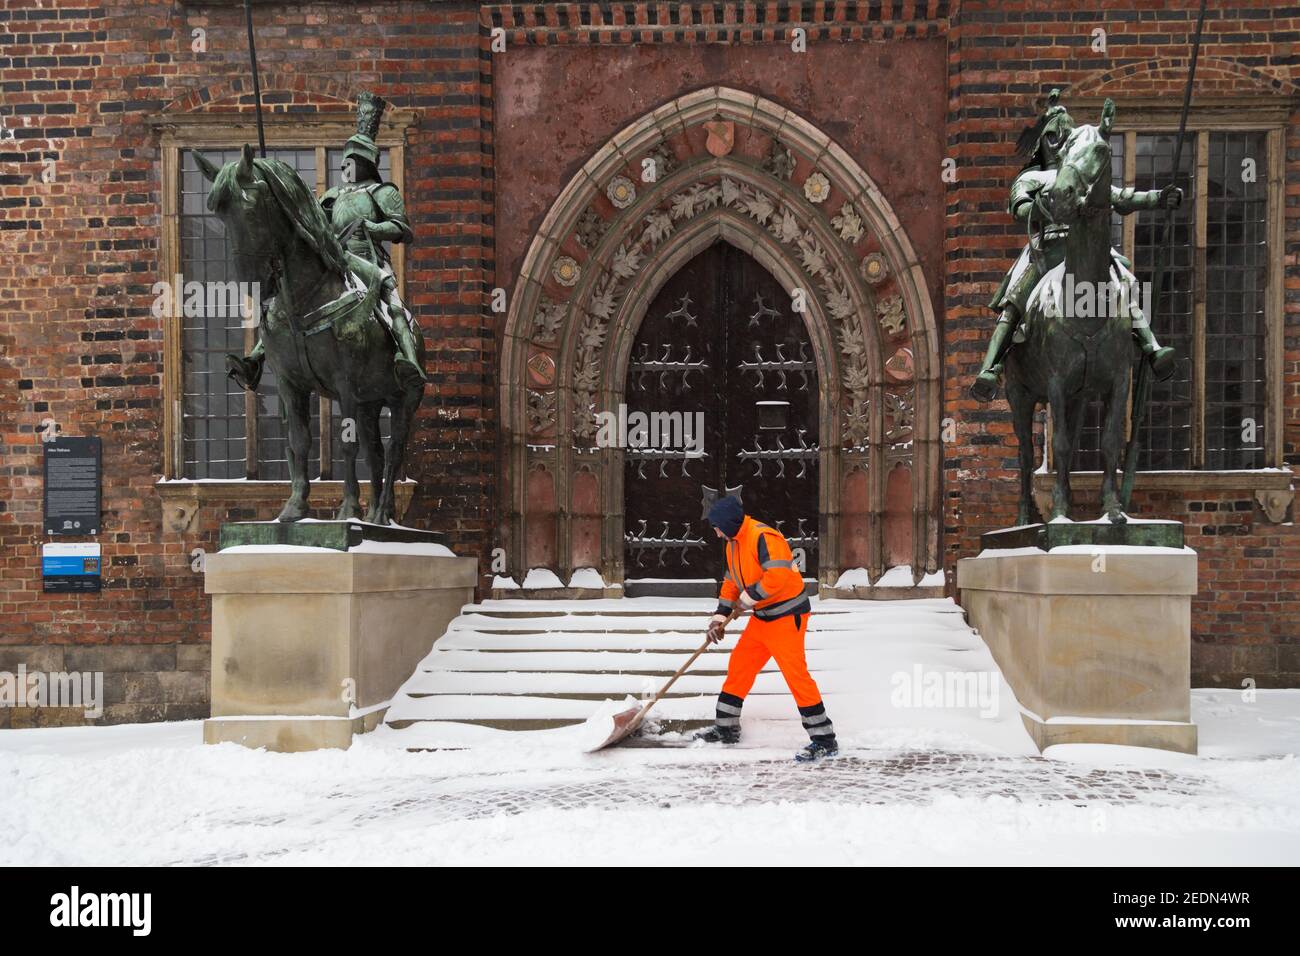 07.02.2021, Brême, Brême, Allemagne - le service de nettoyage municipal de Brême pendant l'entretien hivernal devant l'entrée de l'hôtel de ville de Brême. 0 Banque D'Images